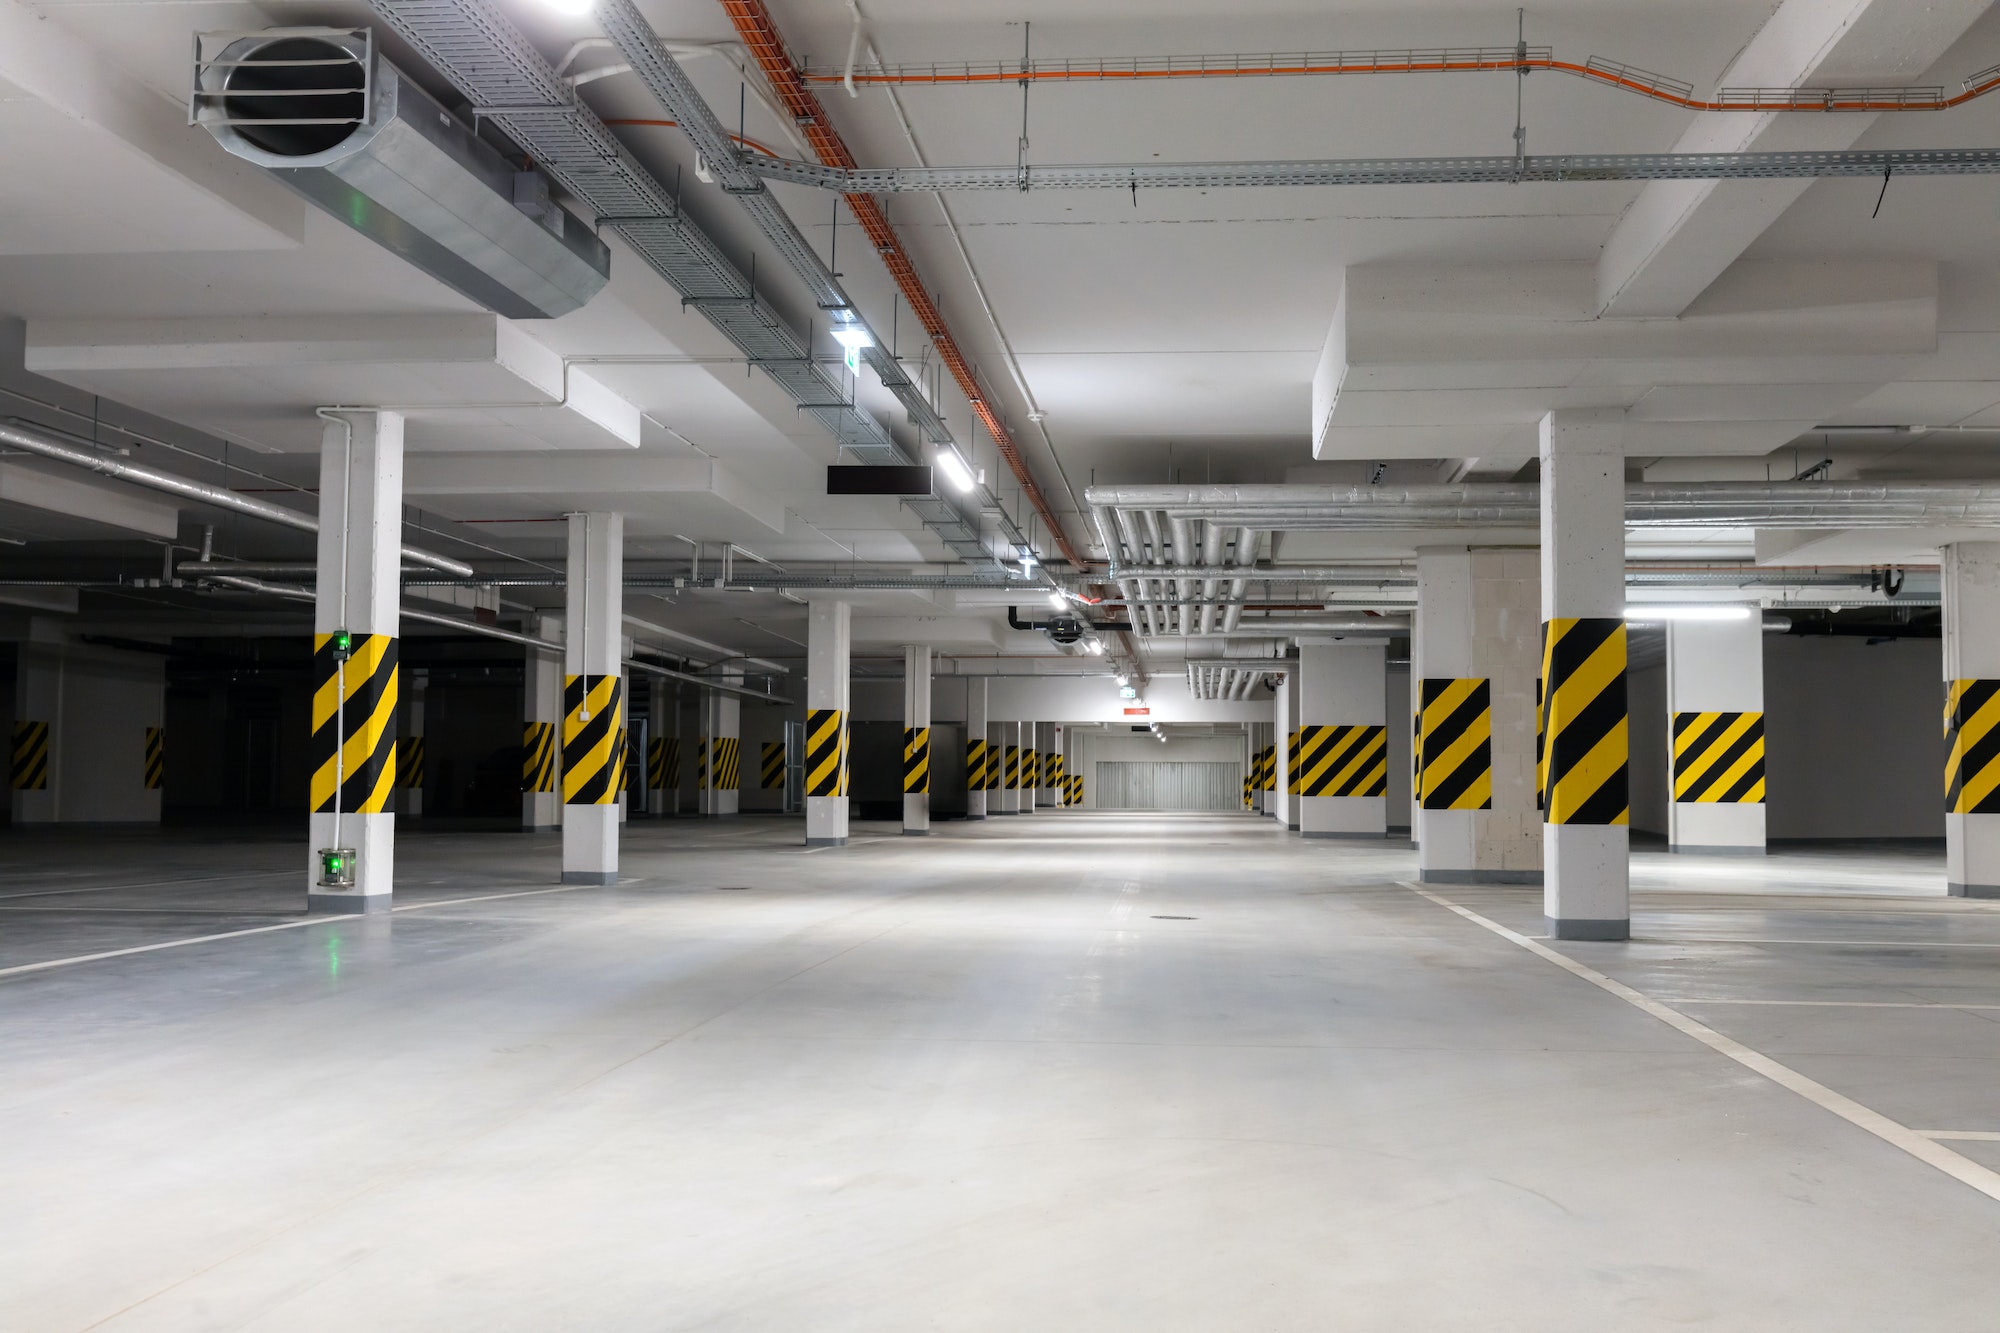 Underground empty parking garage. Modern urban space